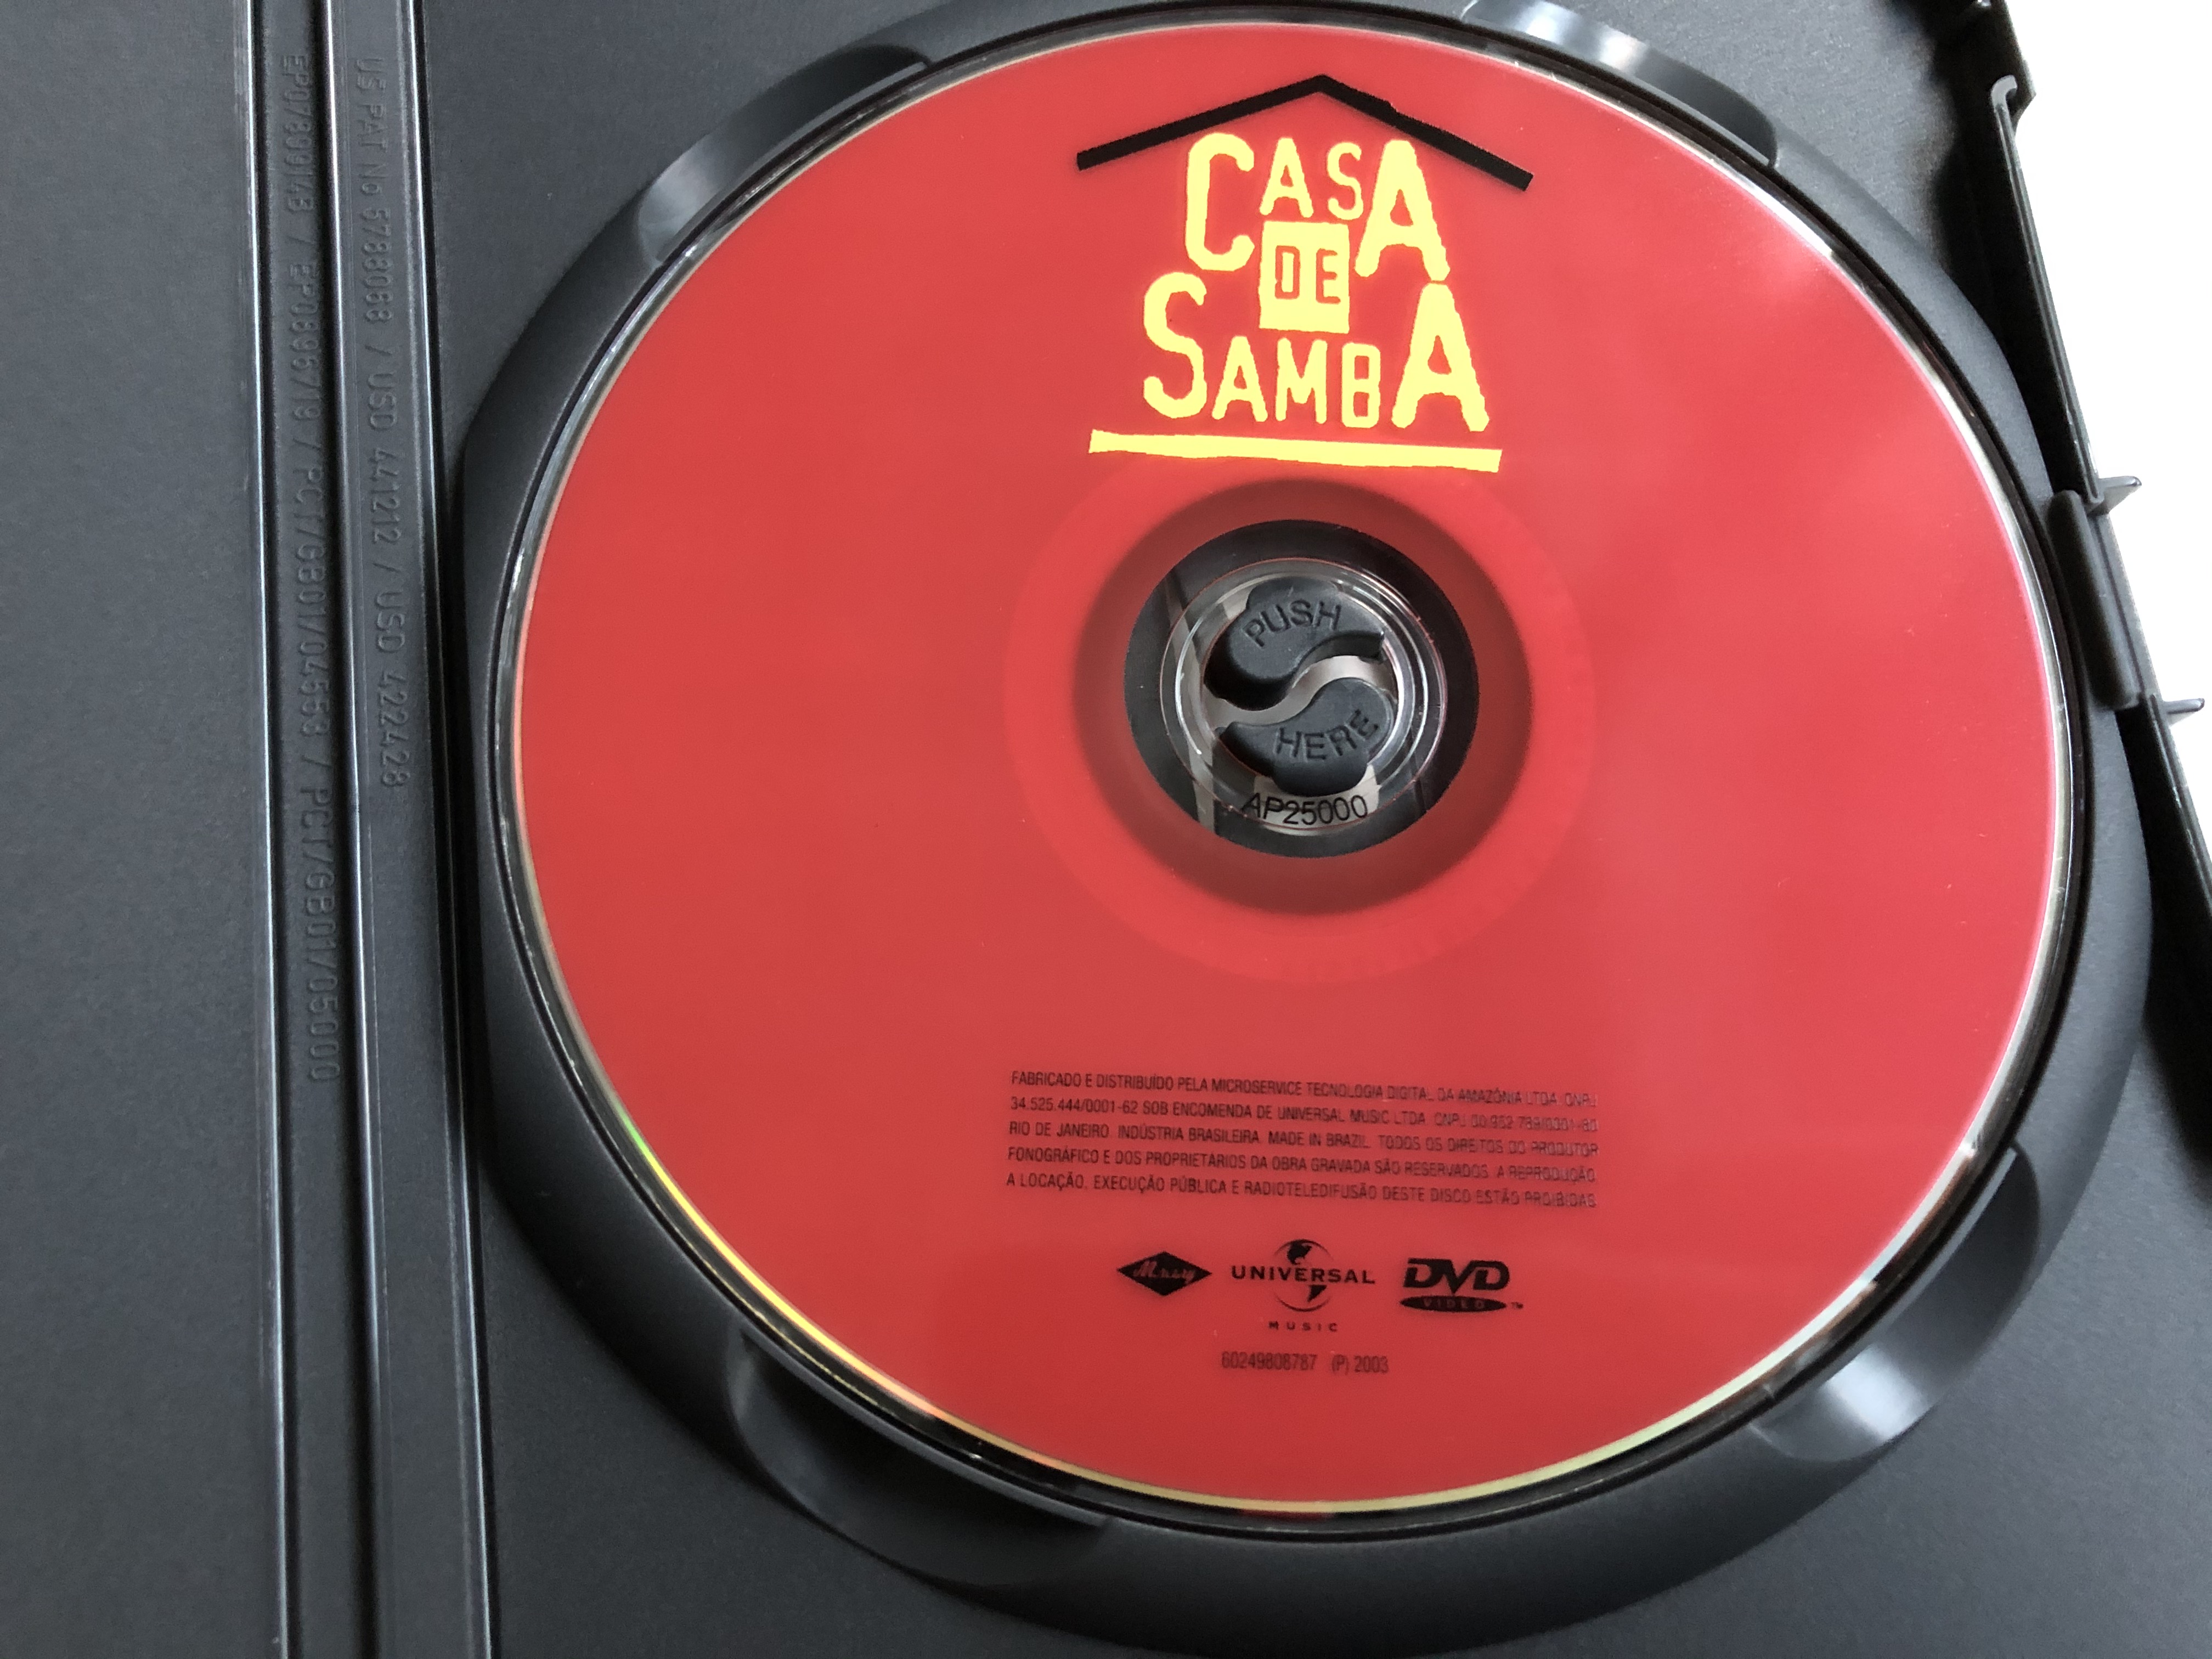 casa-de-samba-dvd-2003-great-samba-duets-live-03.jpg